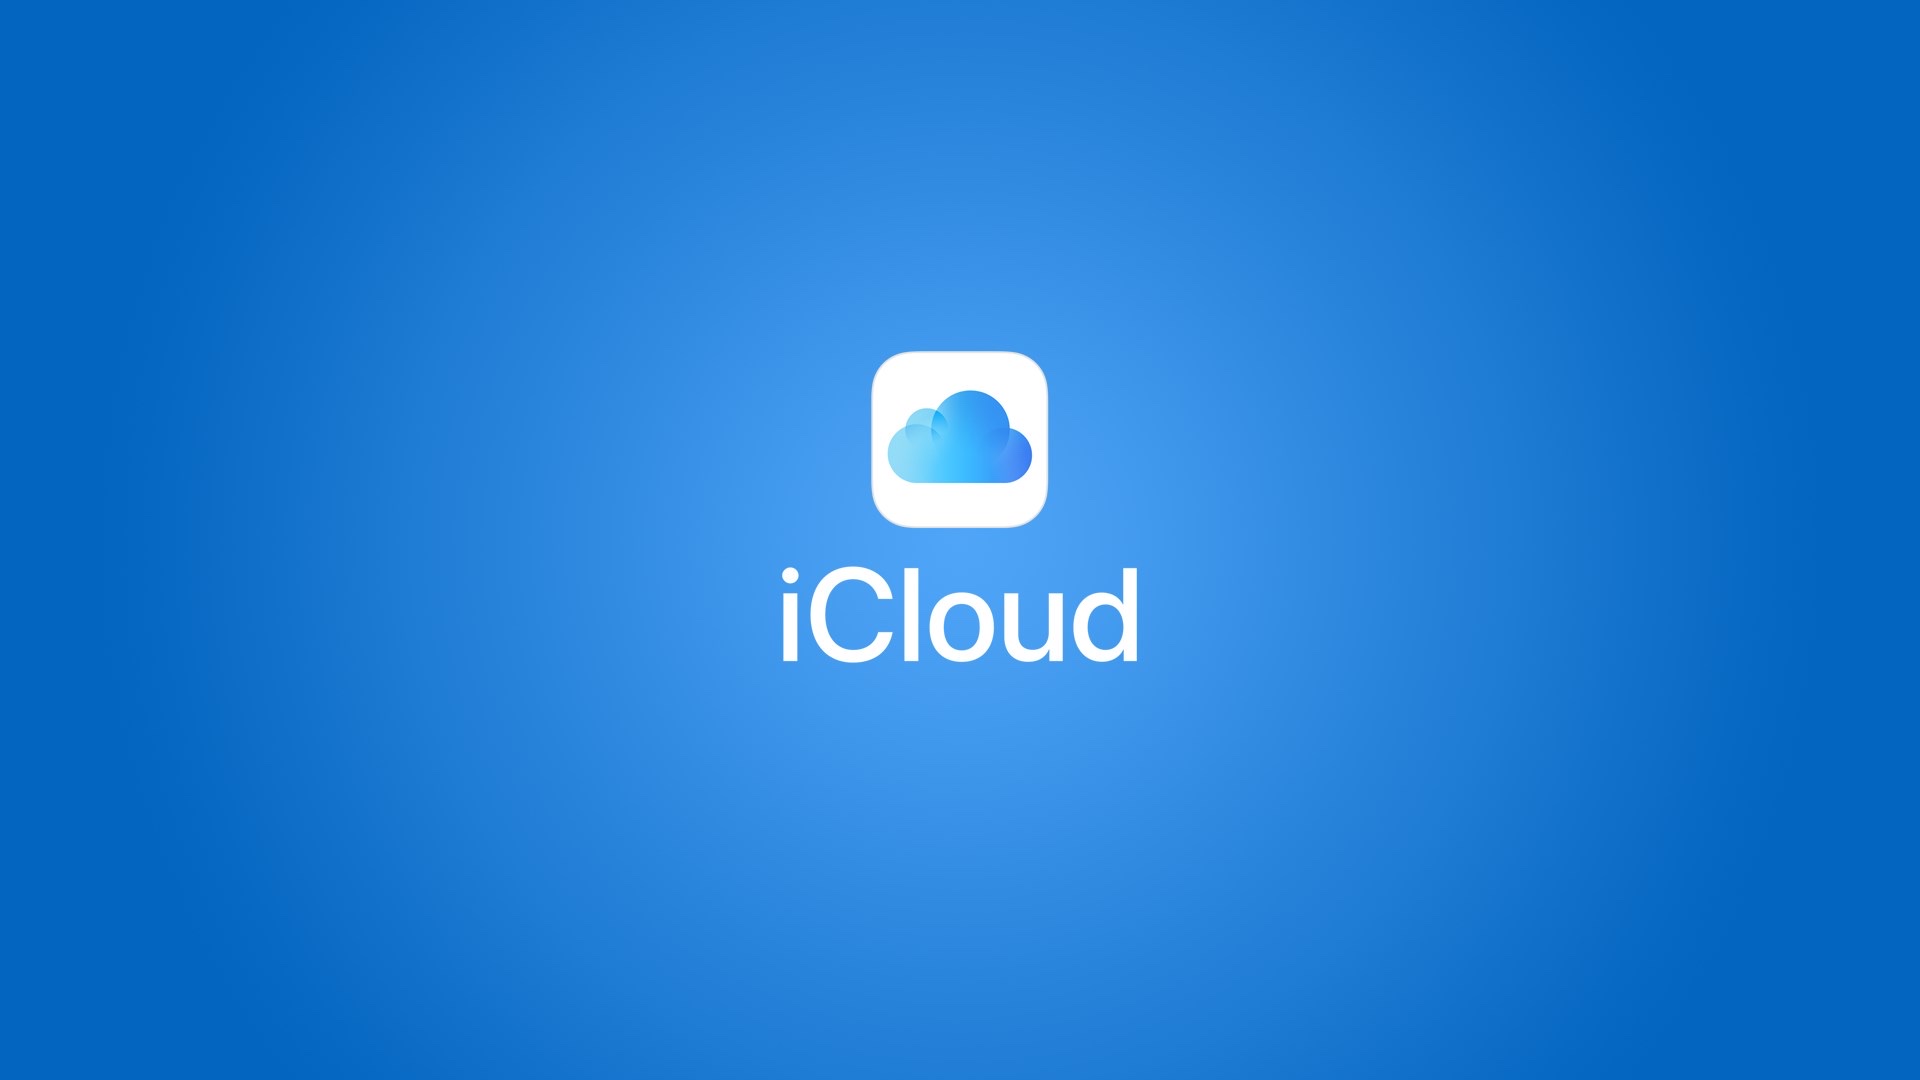 Apple släppte en ny version av iCloud som var optimerad för Windows 10 1